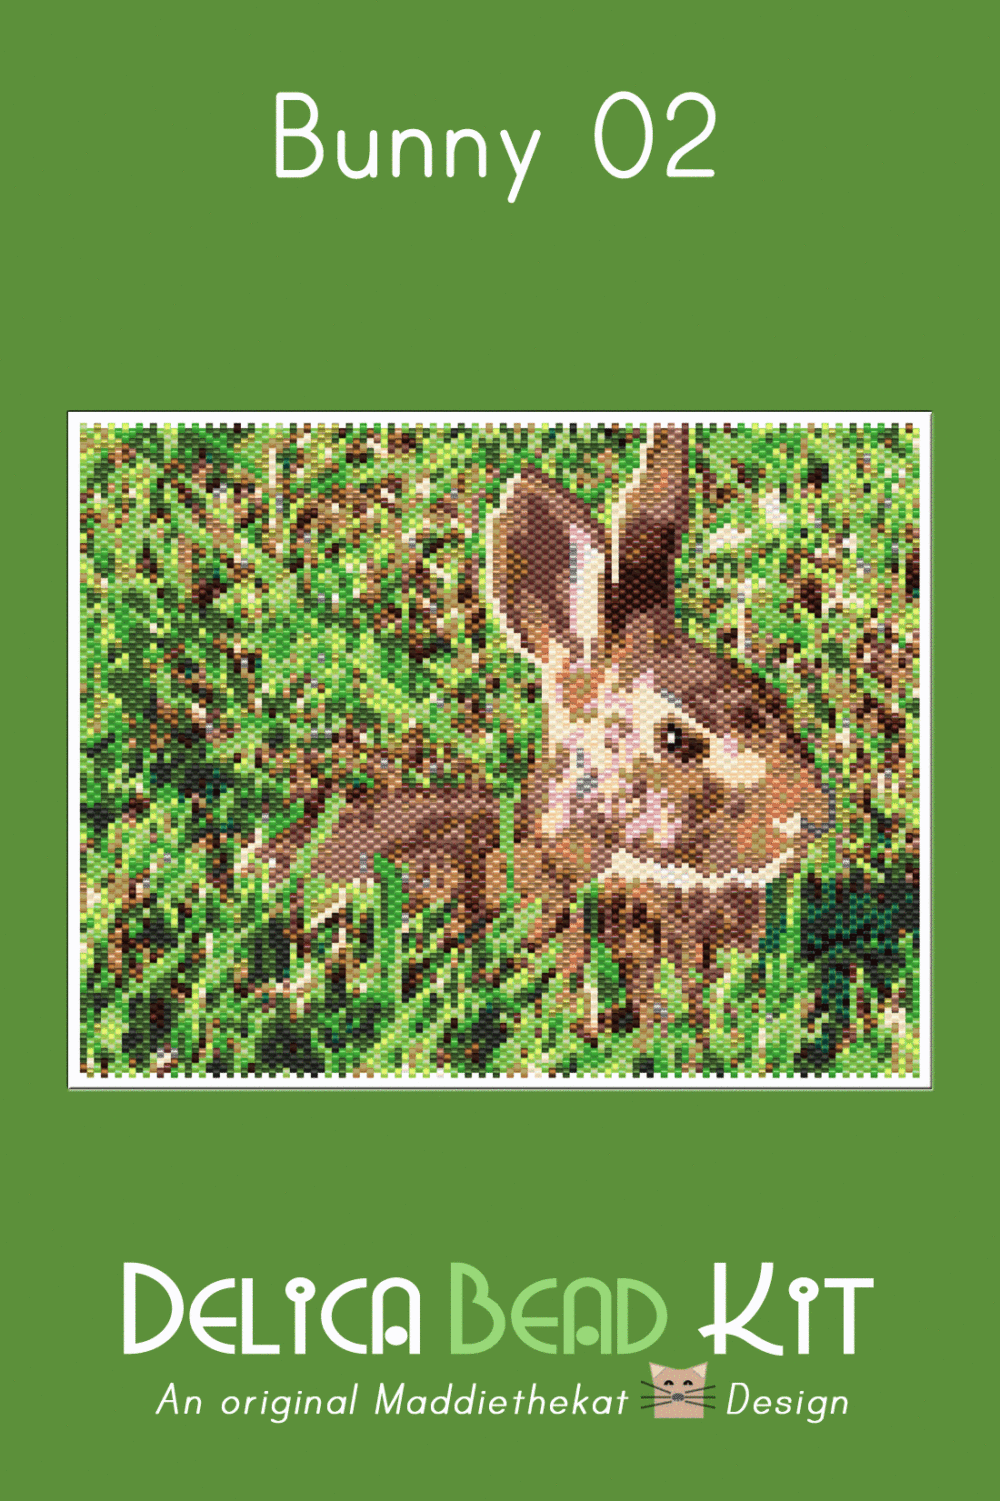 Bunny 02 Larger Peyote Bead Pattern PDF or Bead Kit